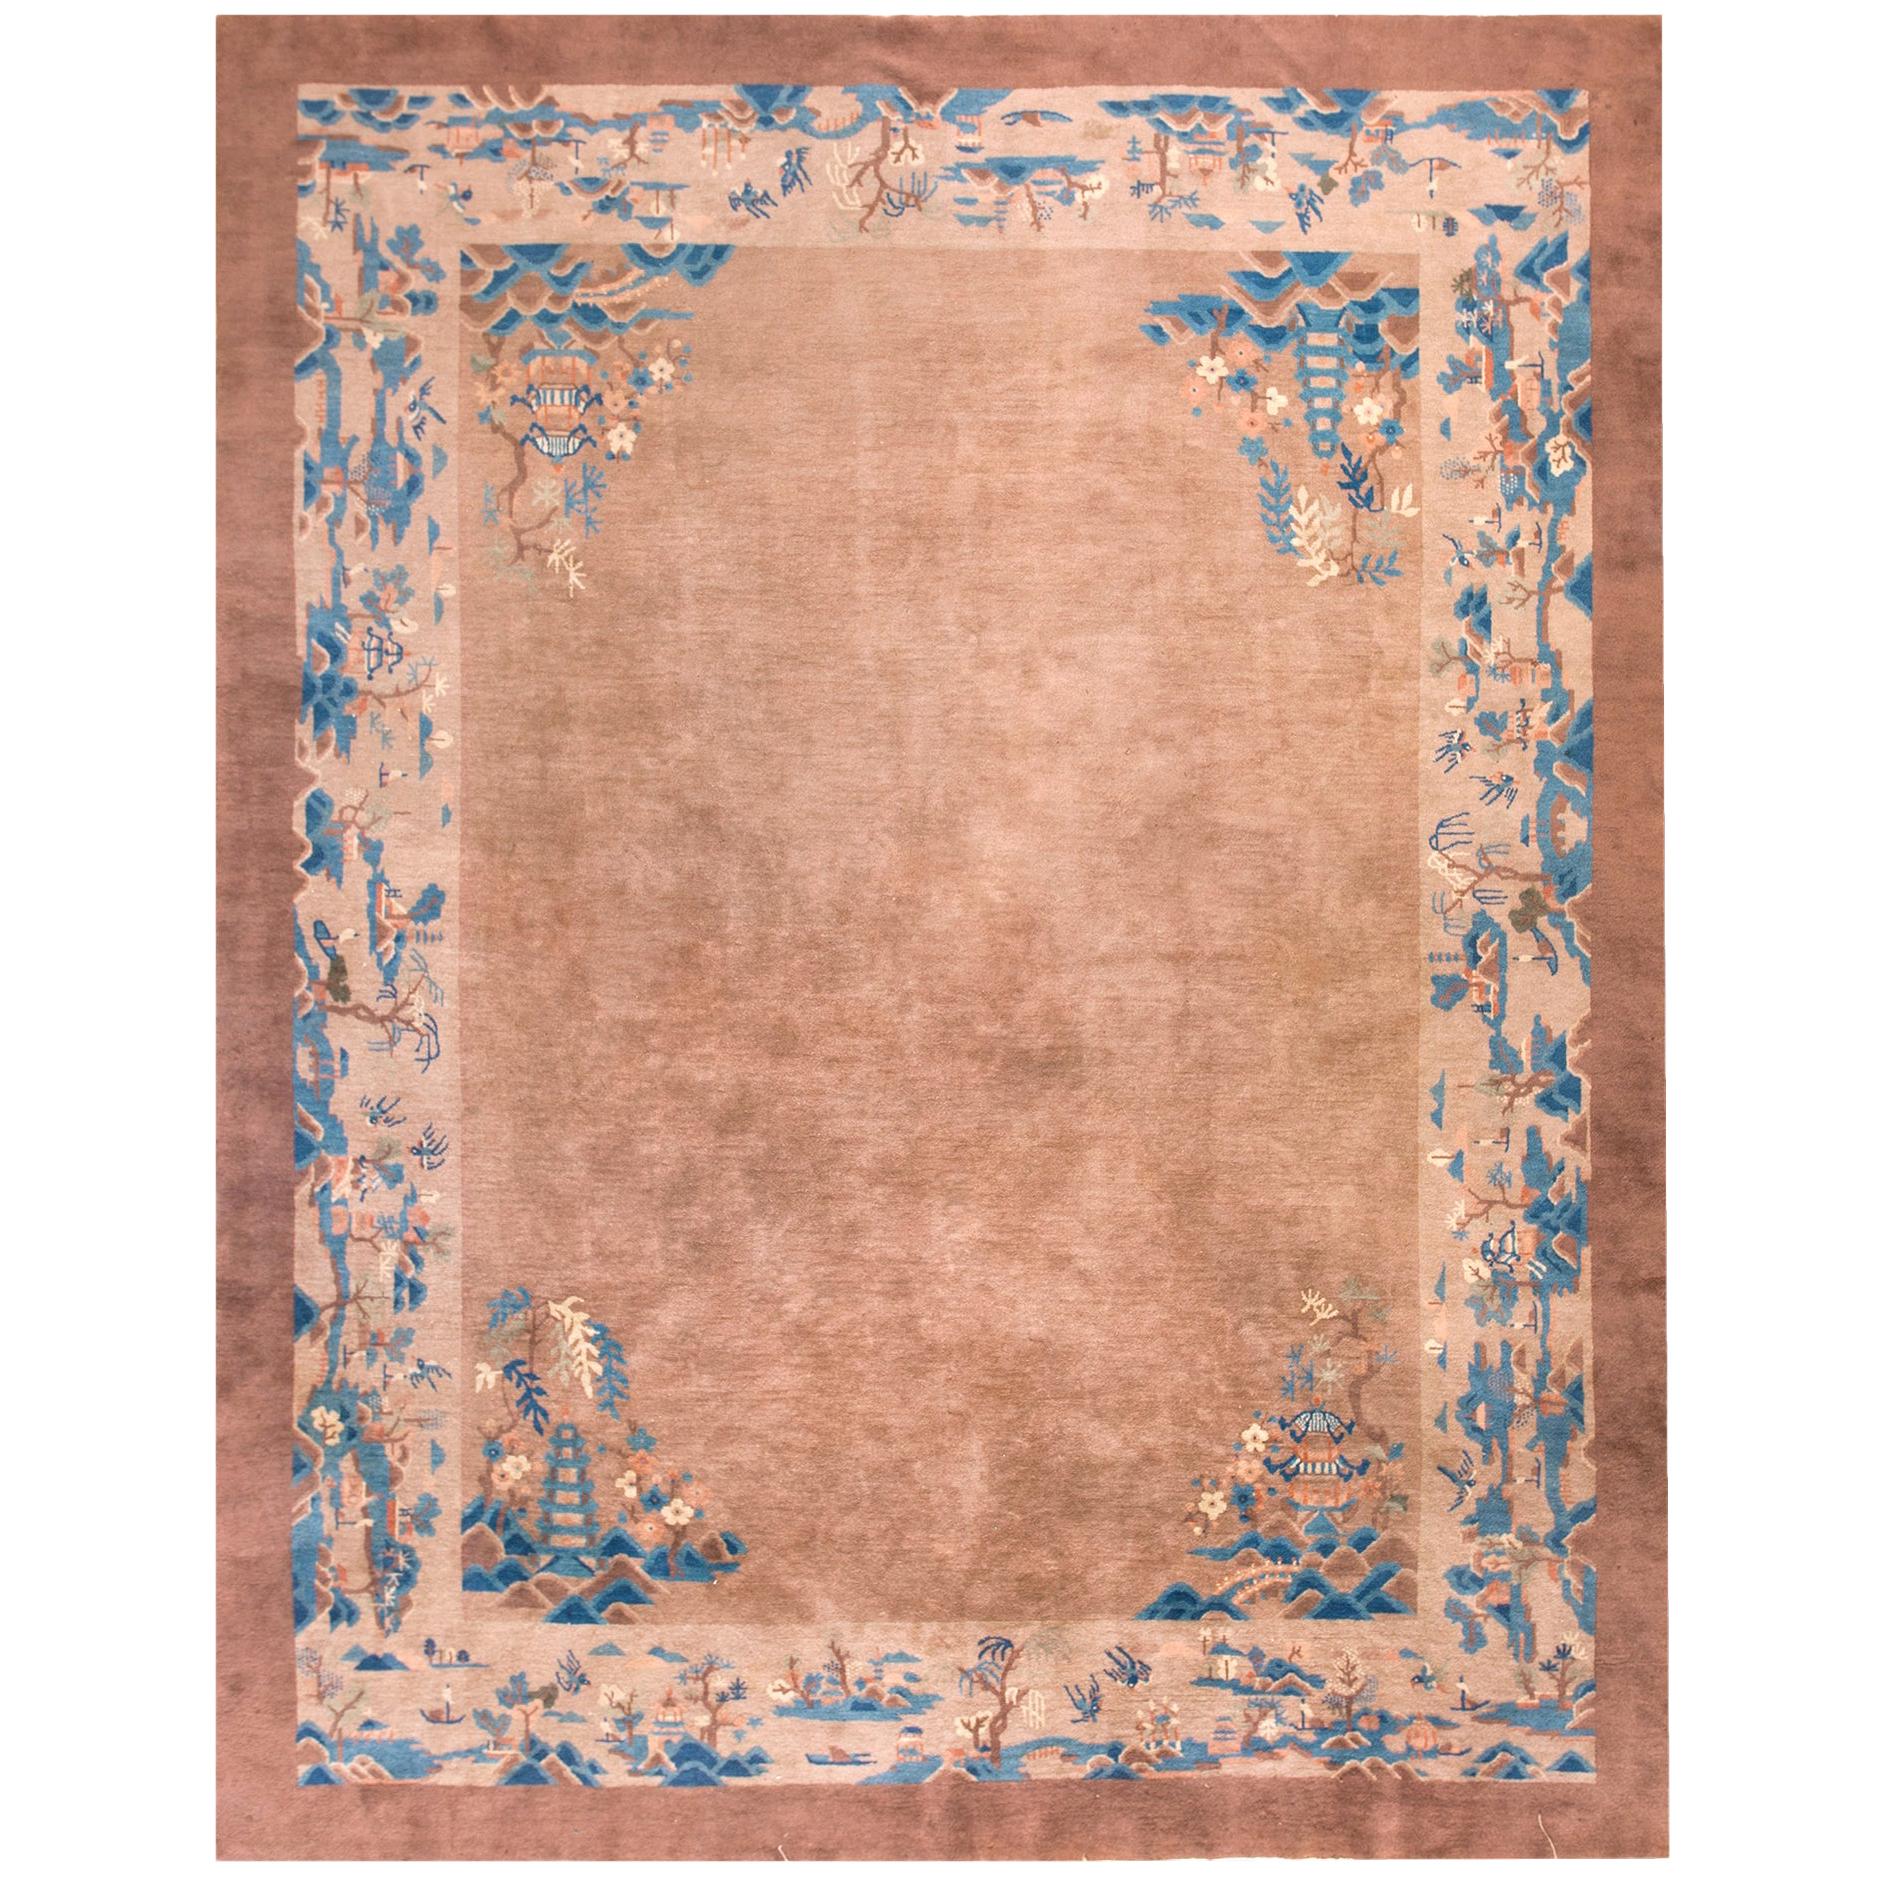 Chinesischer Peking-Teppich des frühen 20. Jahrhunderts ( 8'8" x 10'8" - 265 x 325")